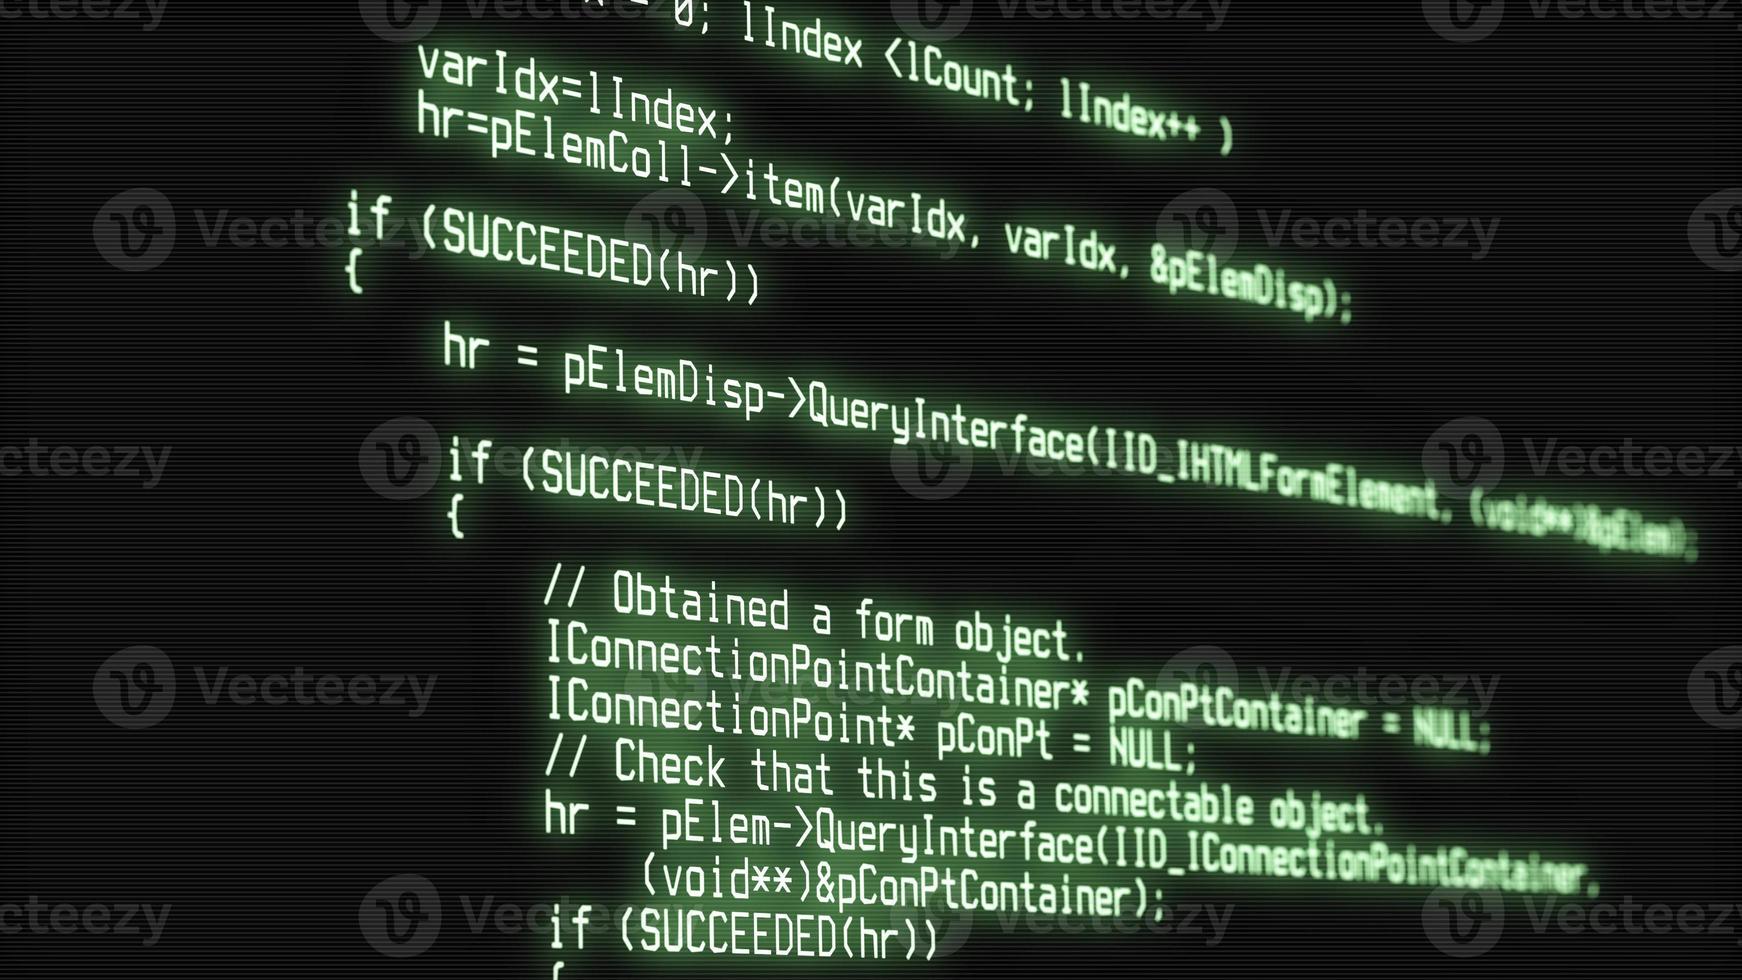 ataque de hacker detectado na tela. tela do computador com código de programa de hacking foto